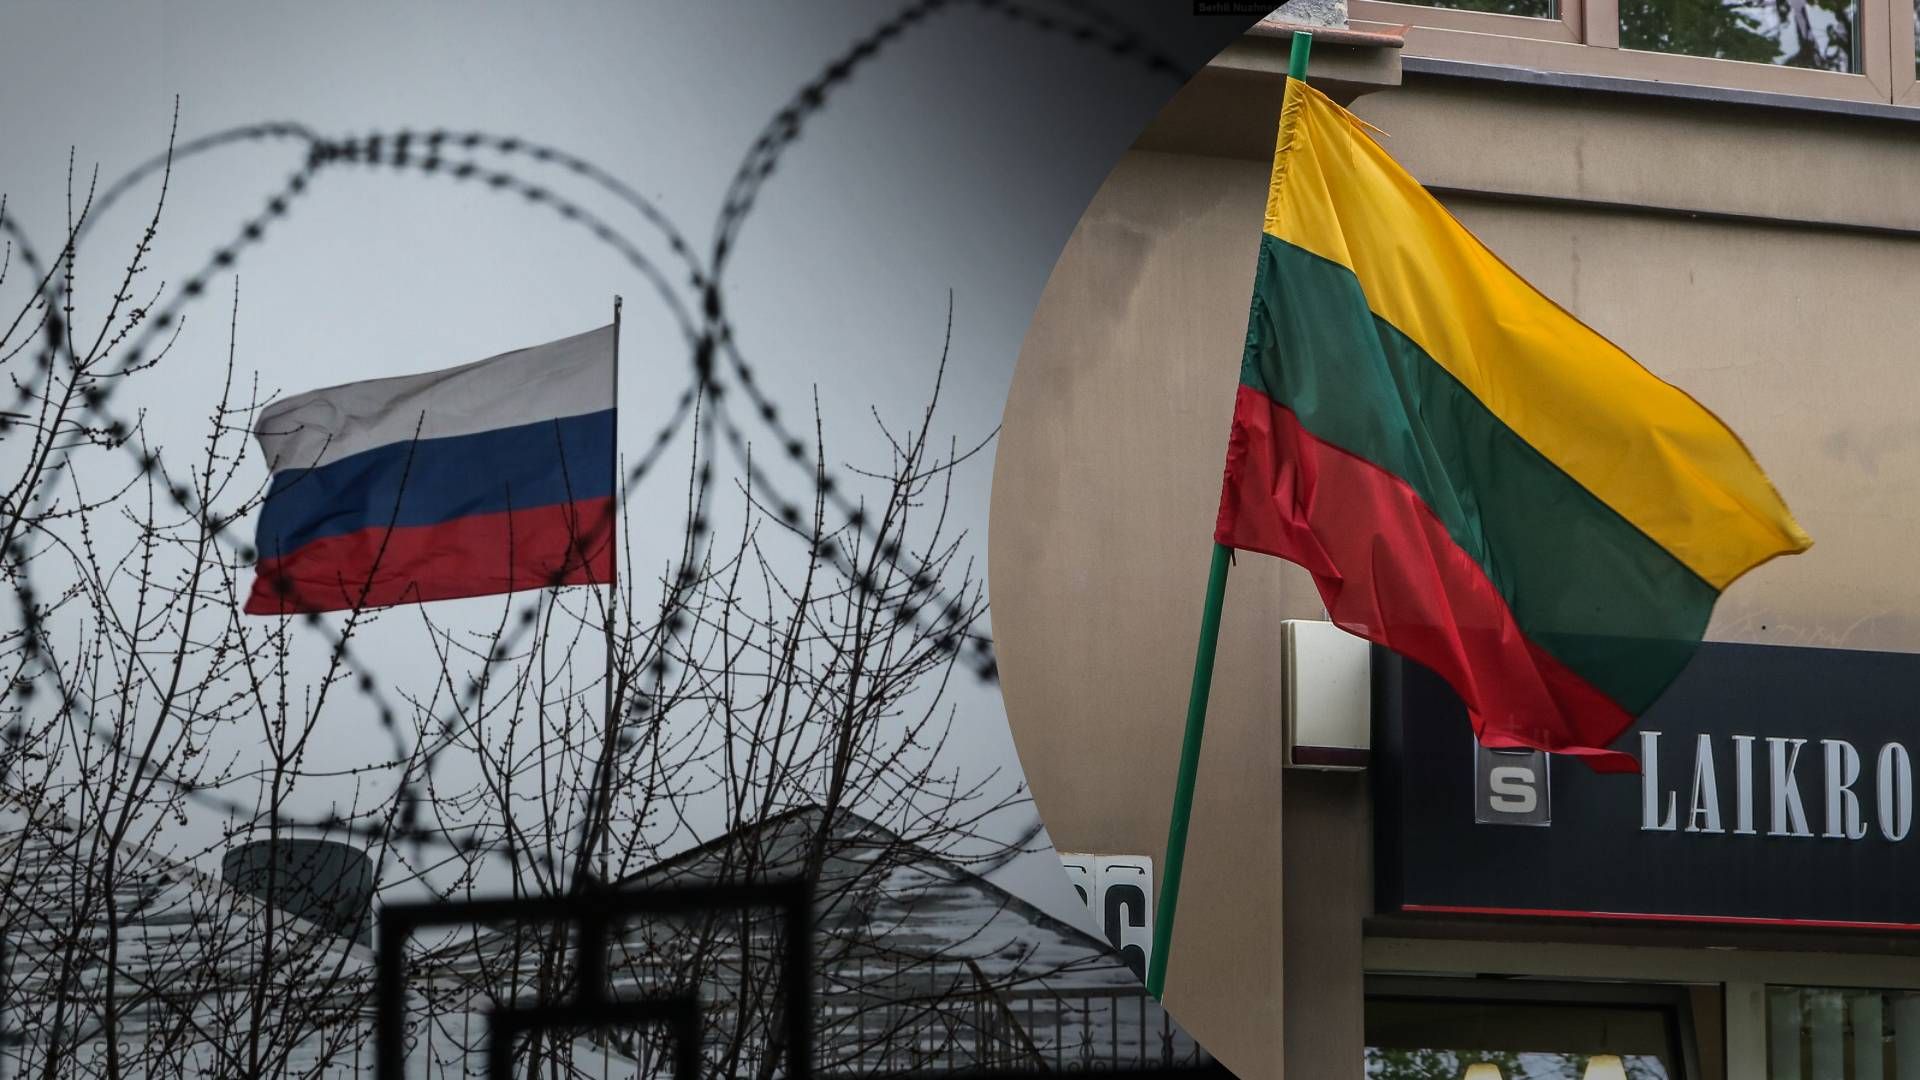 "Мы чувствуем, что война близка": Литва готовится к возможному конфликту с Россией - 24 Канал